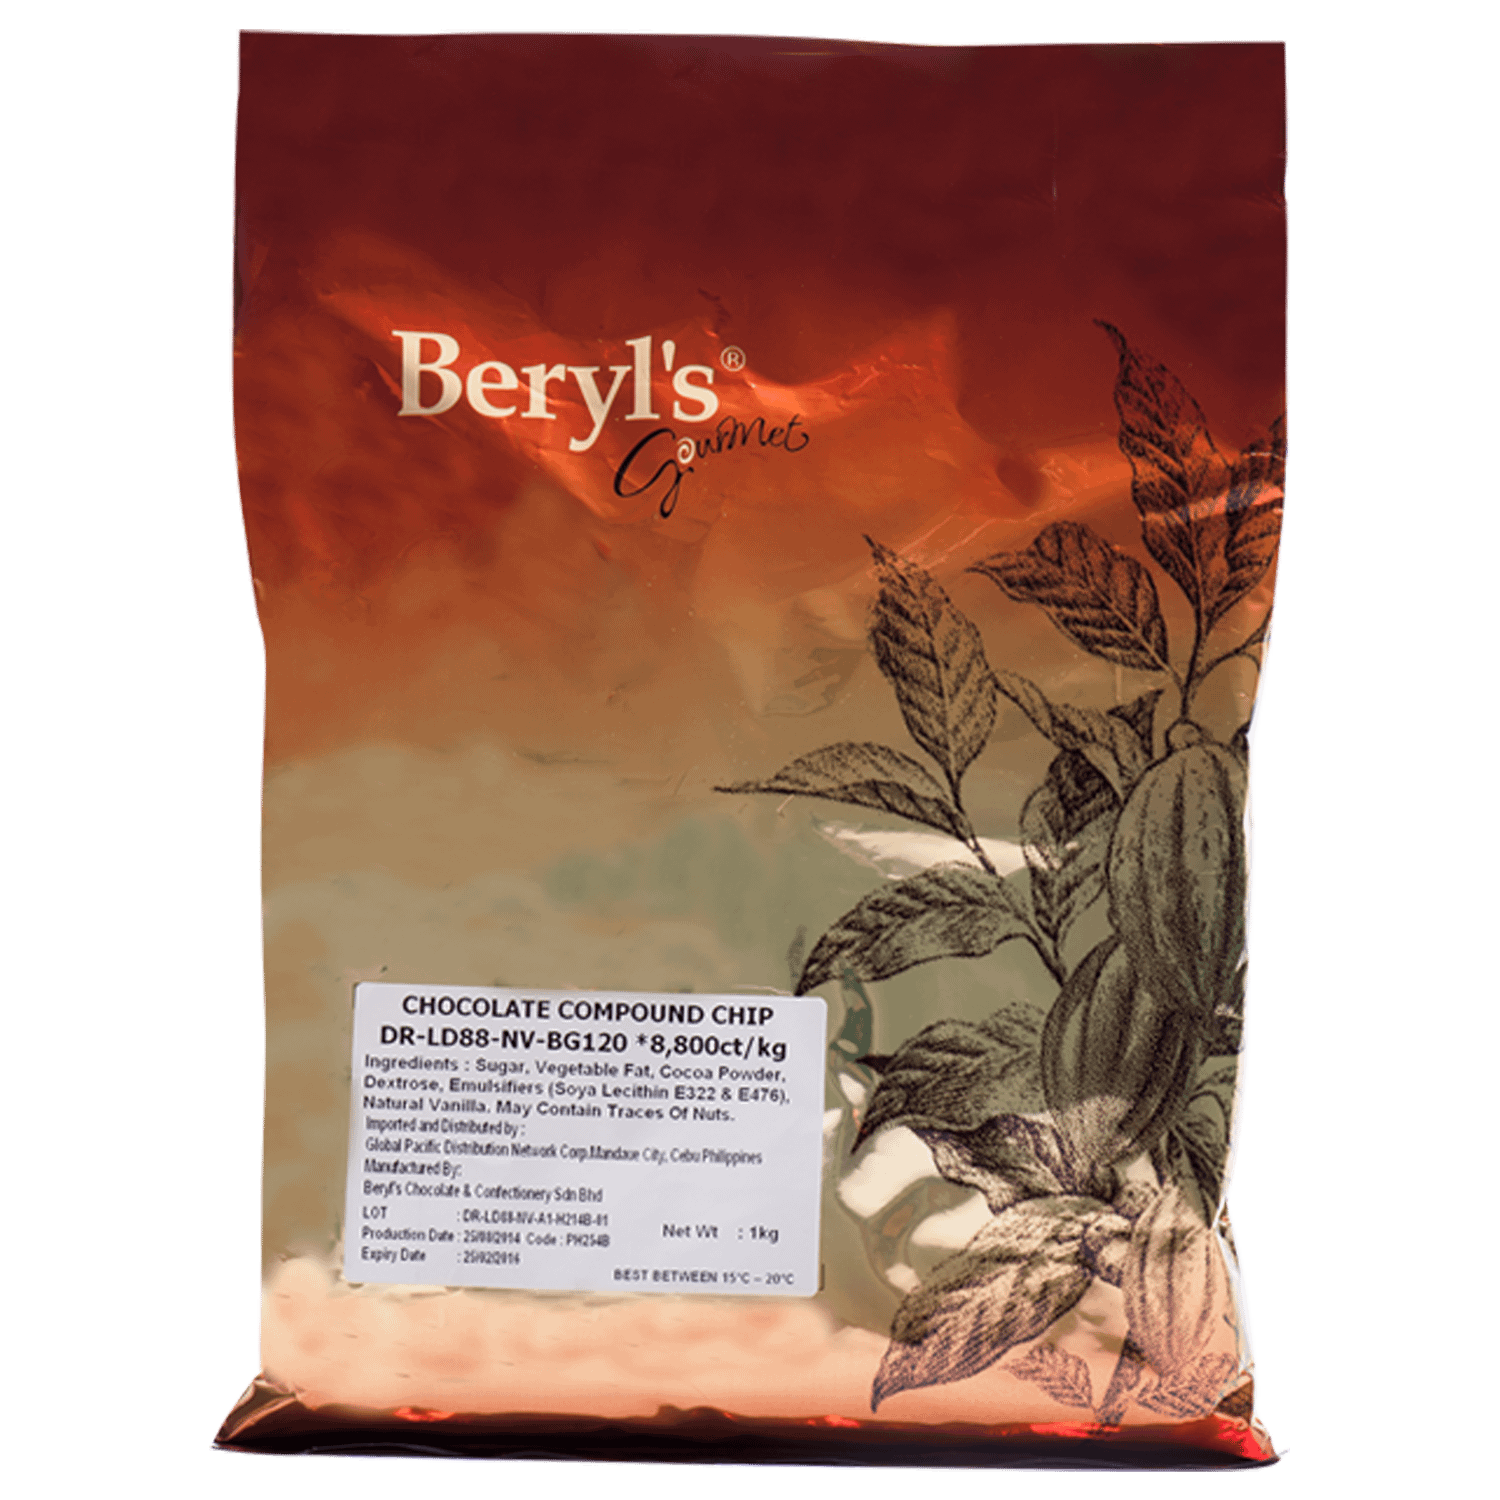 Beryl’s Gourmet – Global Pacific